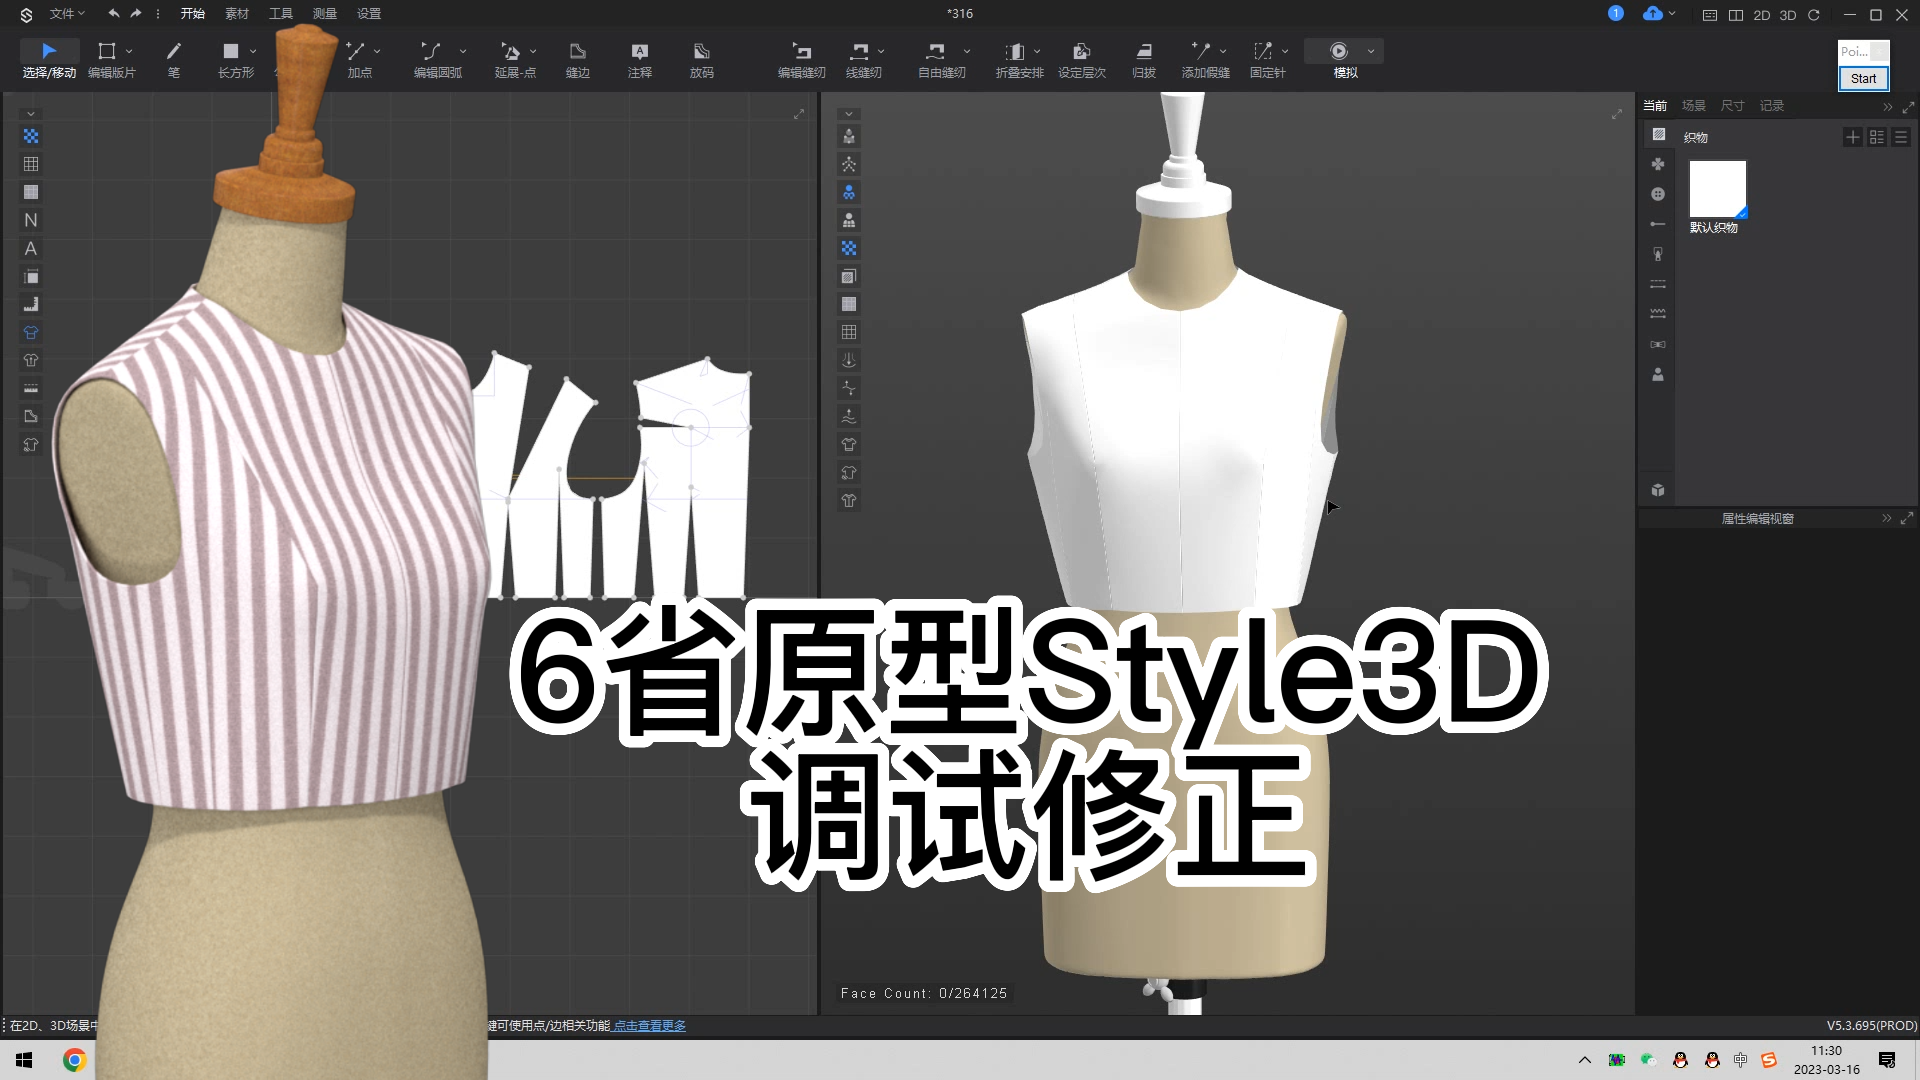 28.6省原型Style3D试衣模拟-调试修正